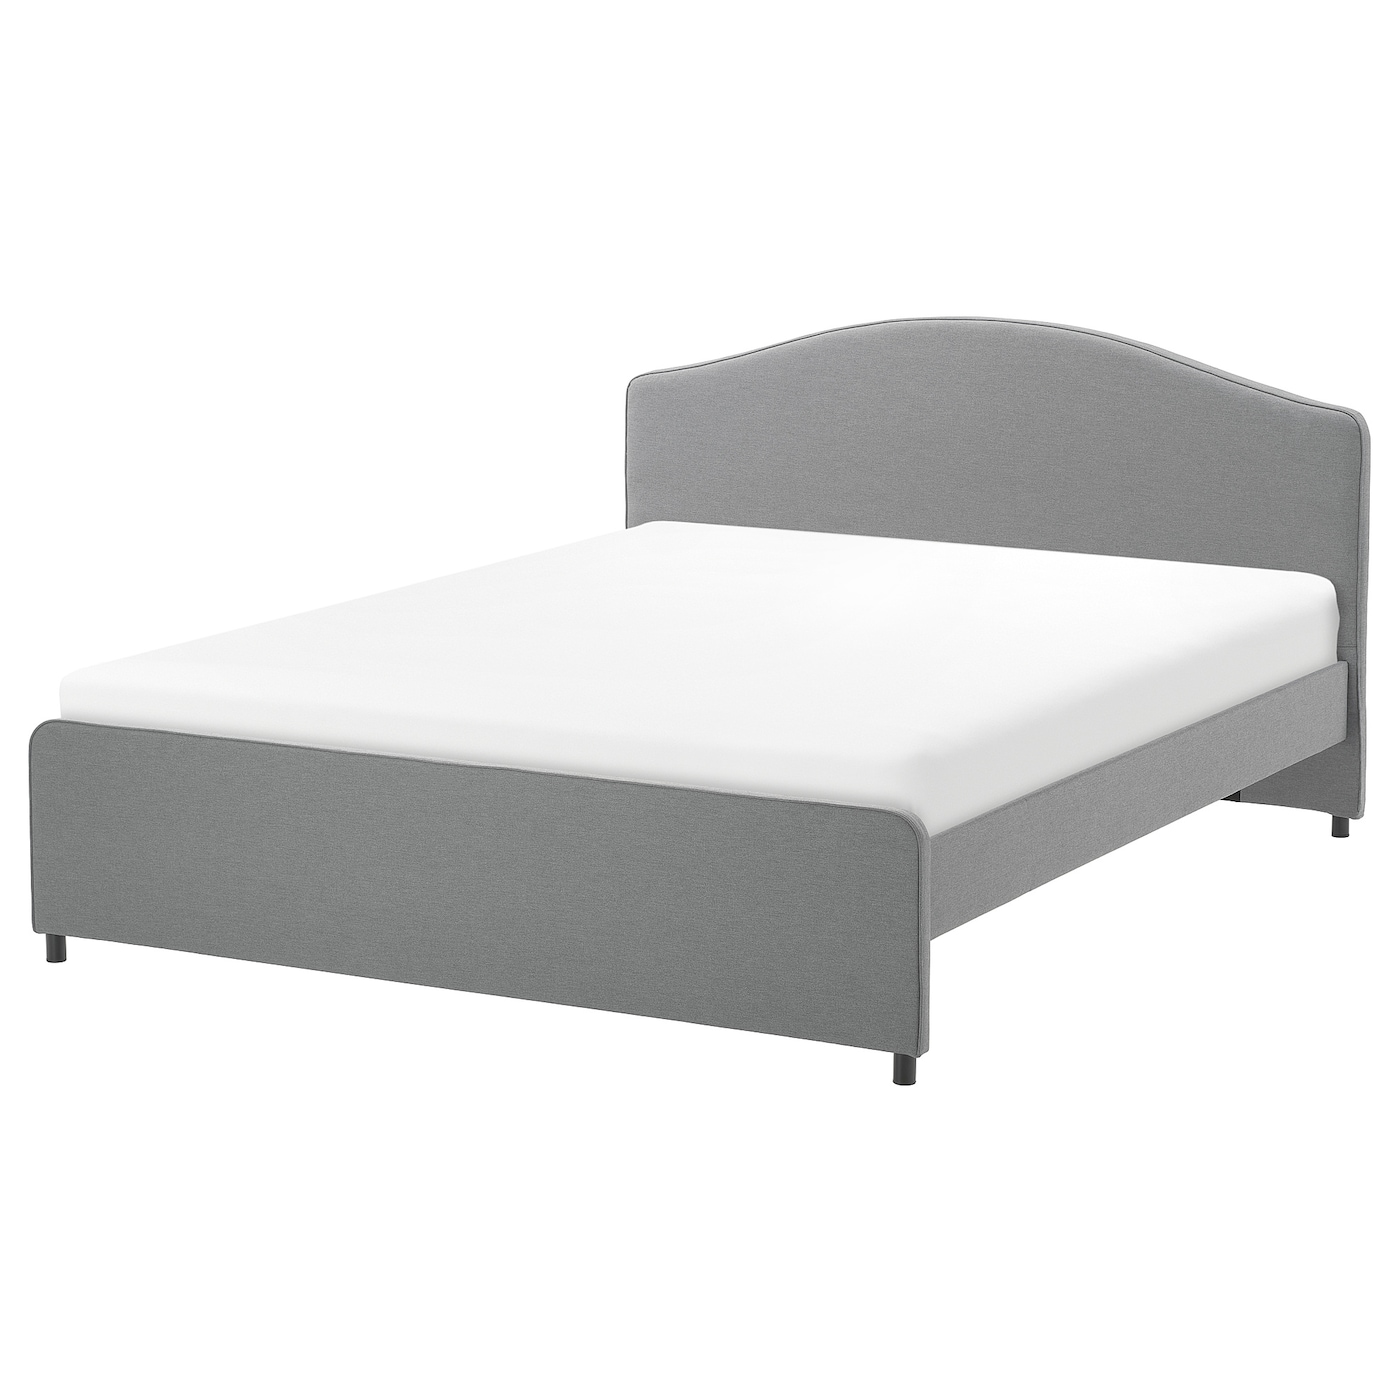 Двуспальная кровать - IKEA HAUGA, 200х160 см, серый, ХАУГА ИКЕА